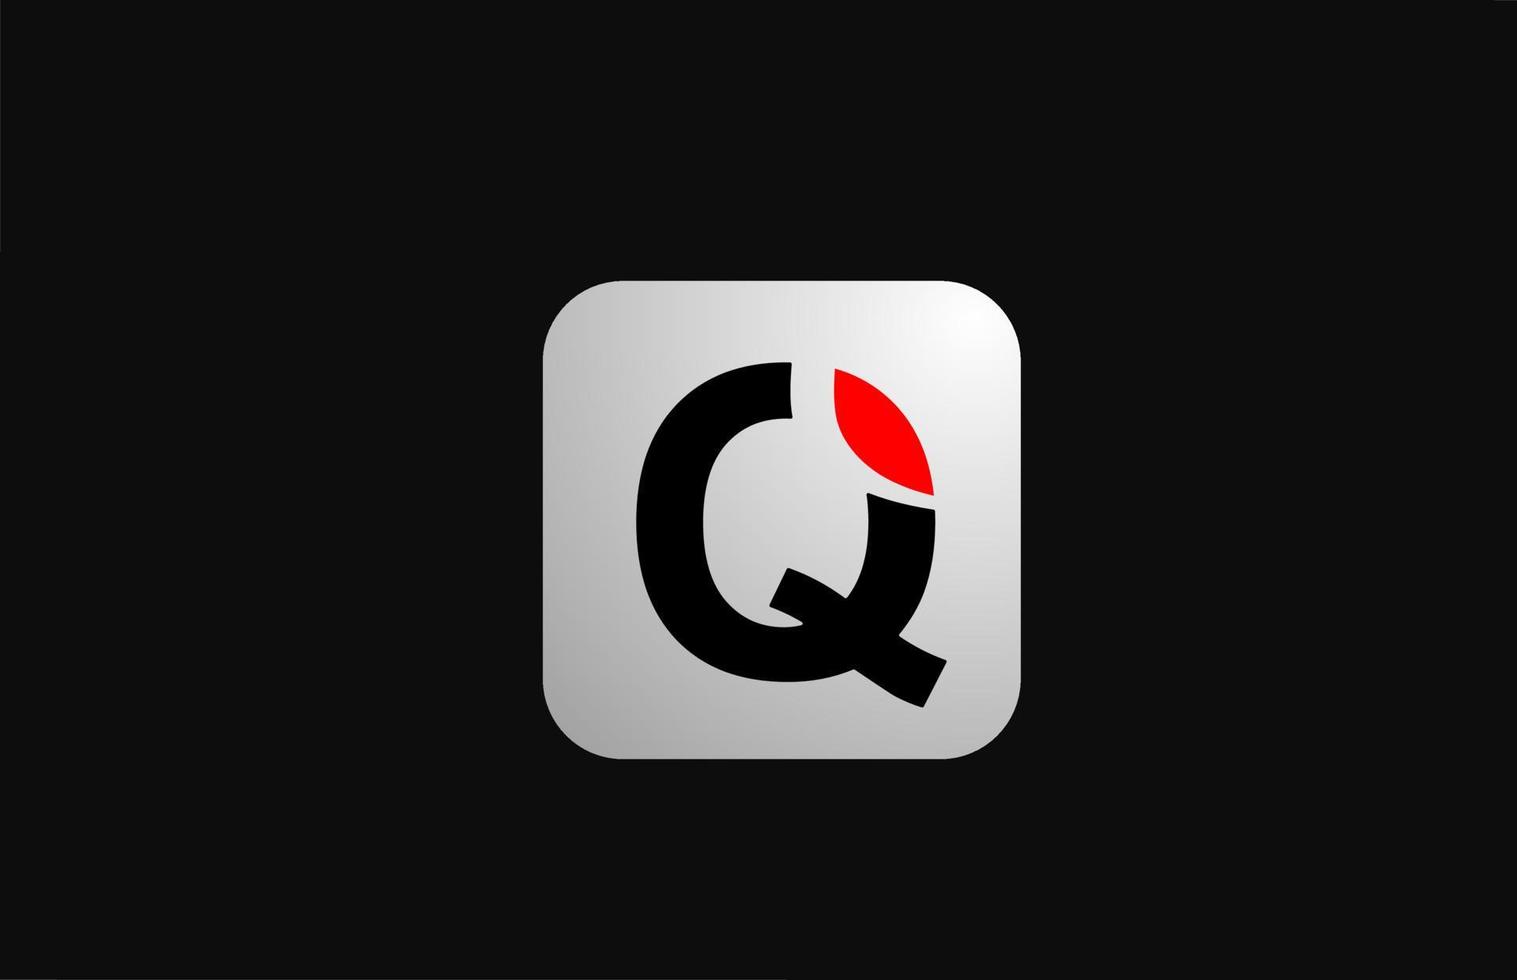 q alfabet letterpictogram logo voor bedrijf en bedrijf met eenvoudig zwart-wit ontwerp vector